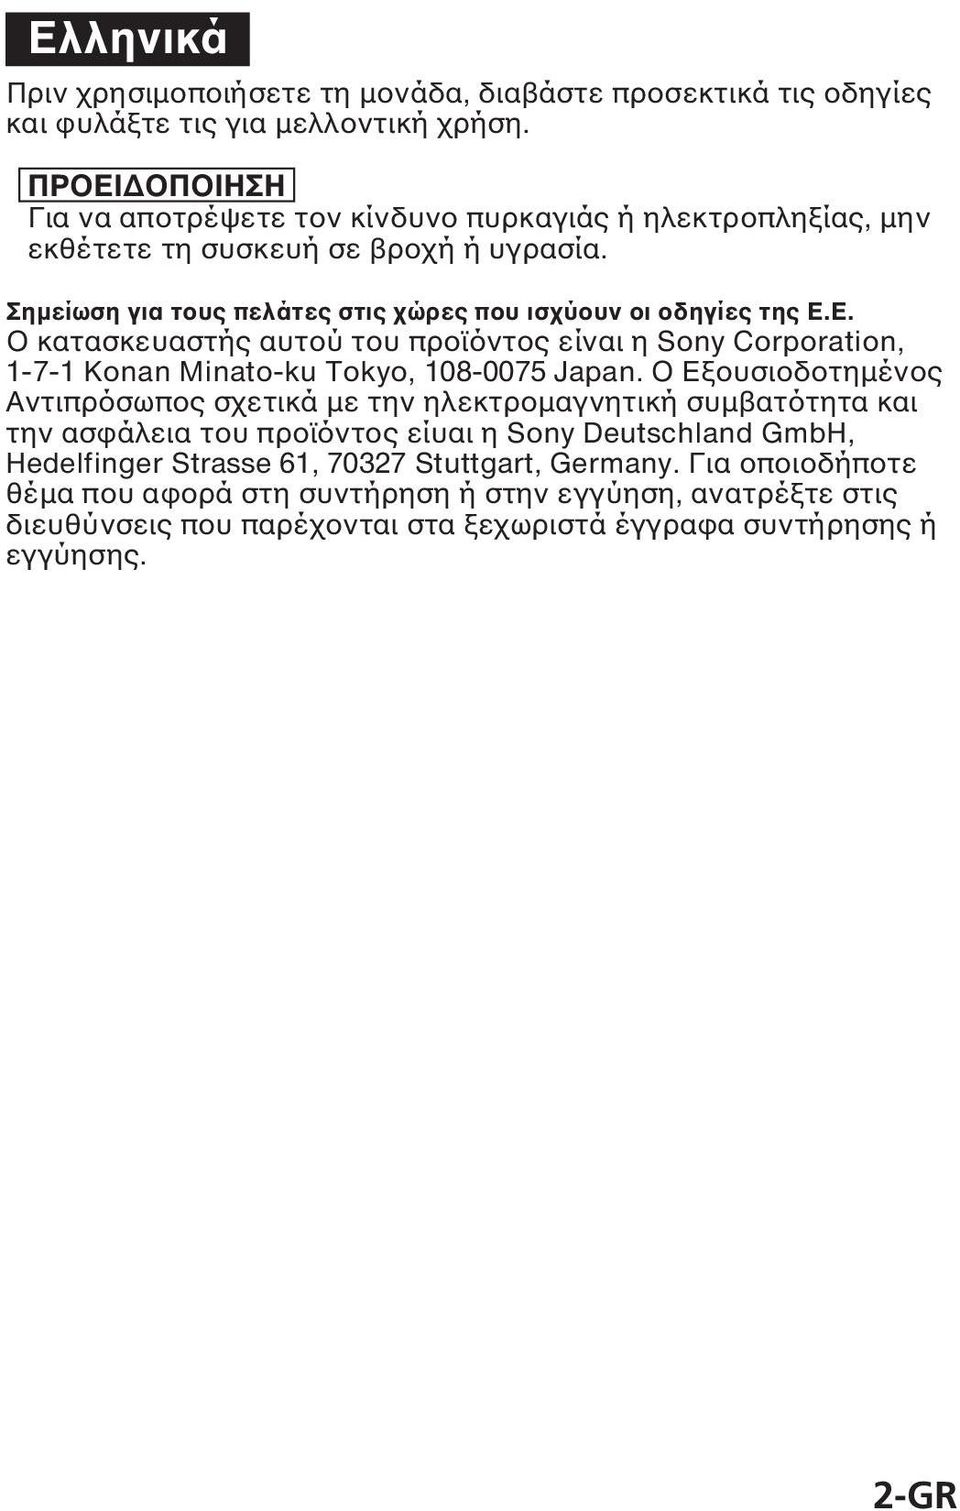 O Eξουσιοδοτηµένος Αντιπρόσωπος σχετικά µε την ηλεκτροµαγνητική συµβατότητα και την ασφάλεια του προϊόντος είυαι η Sony Deutschland GmbH, Hedelfinger Strasse 61, 70327 Stuttgart,